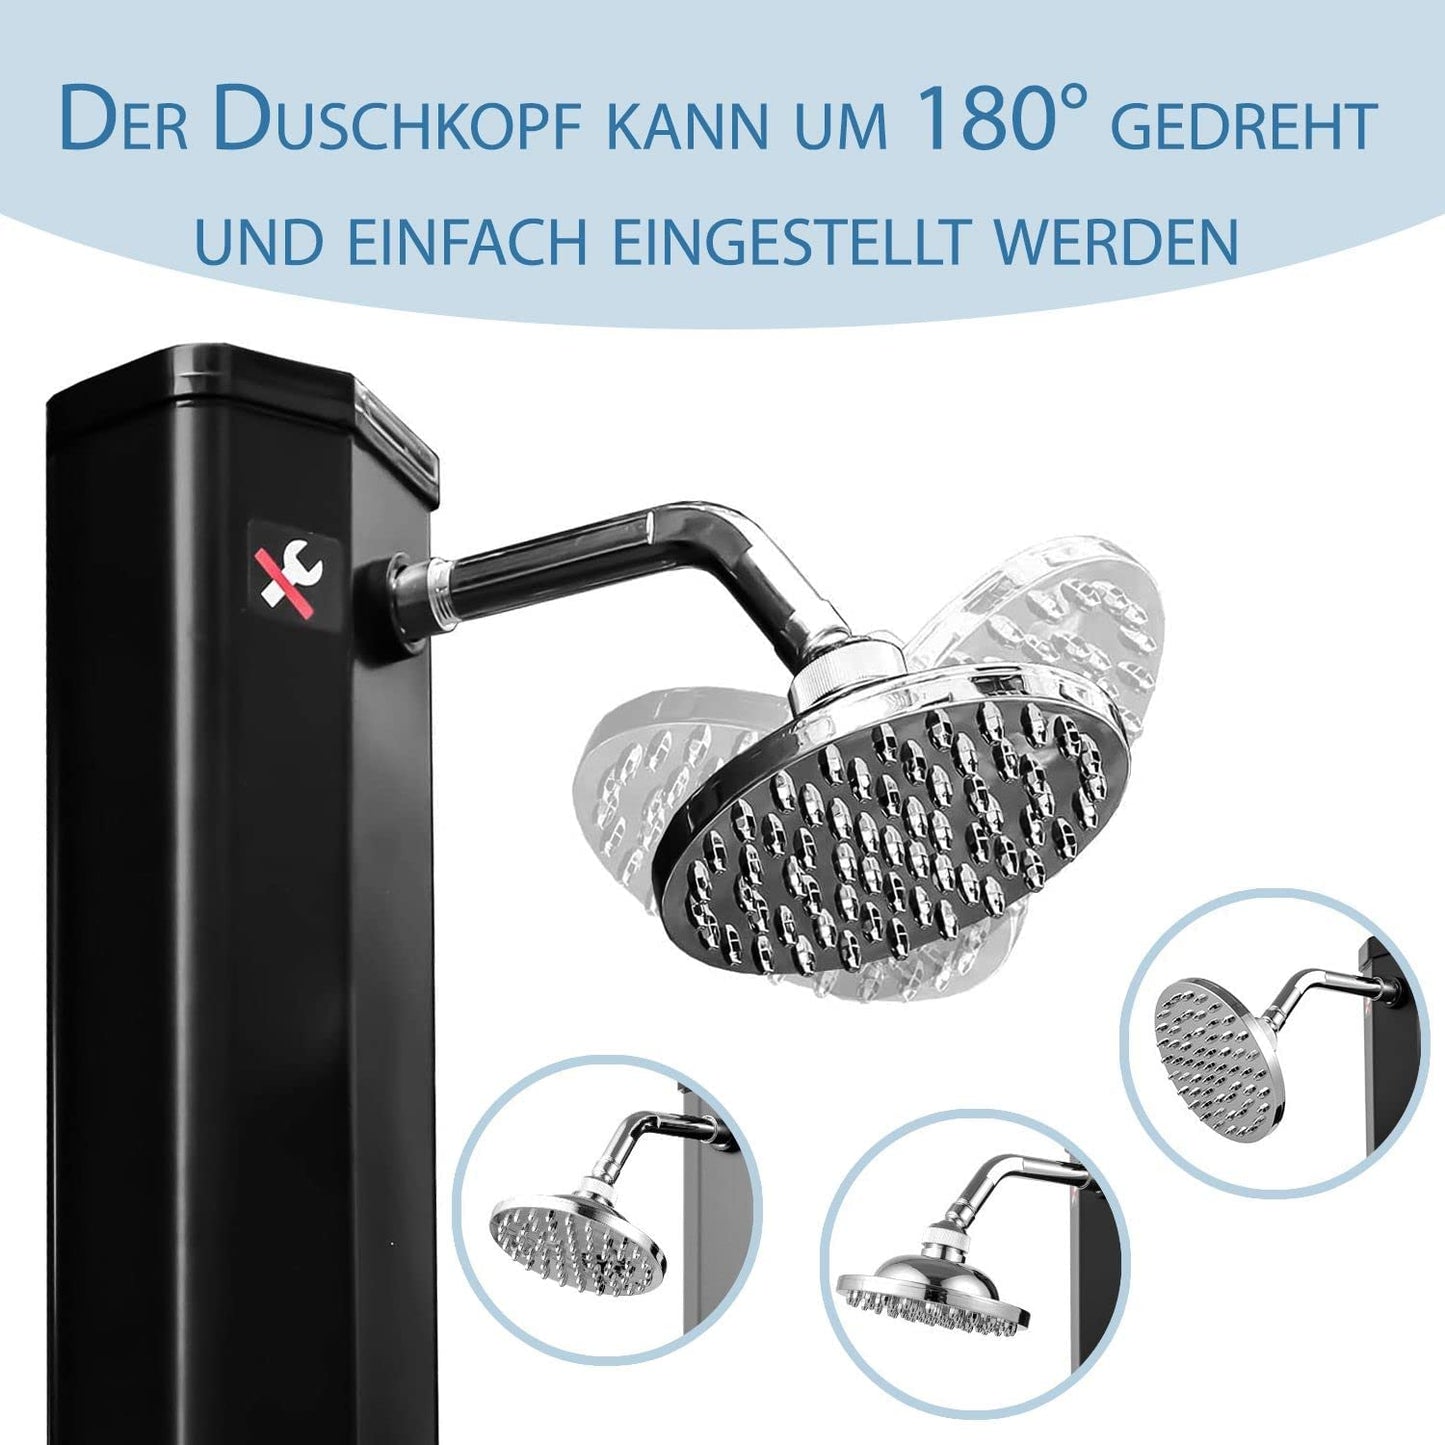 Ideal Eichenwald® Solardusche aus PVC 2-teilig 20 Liter inkl. Fußdusche